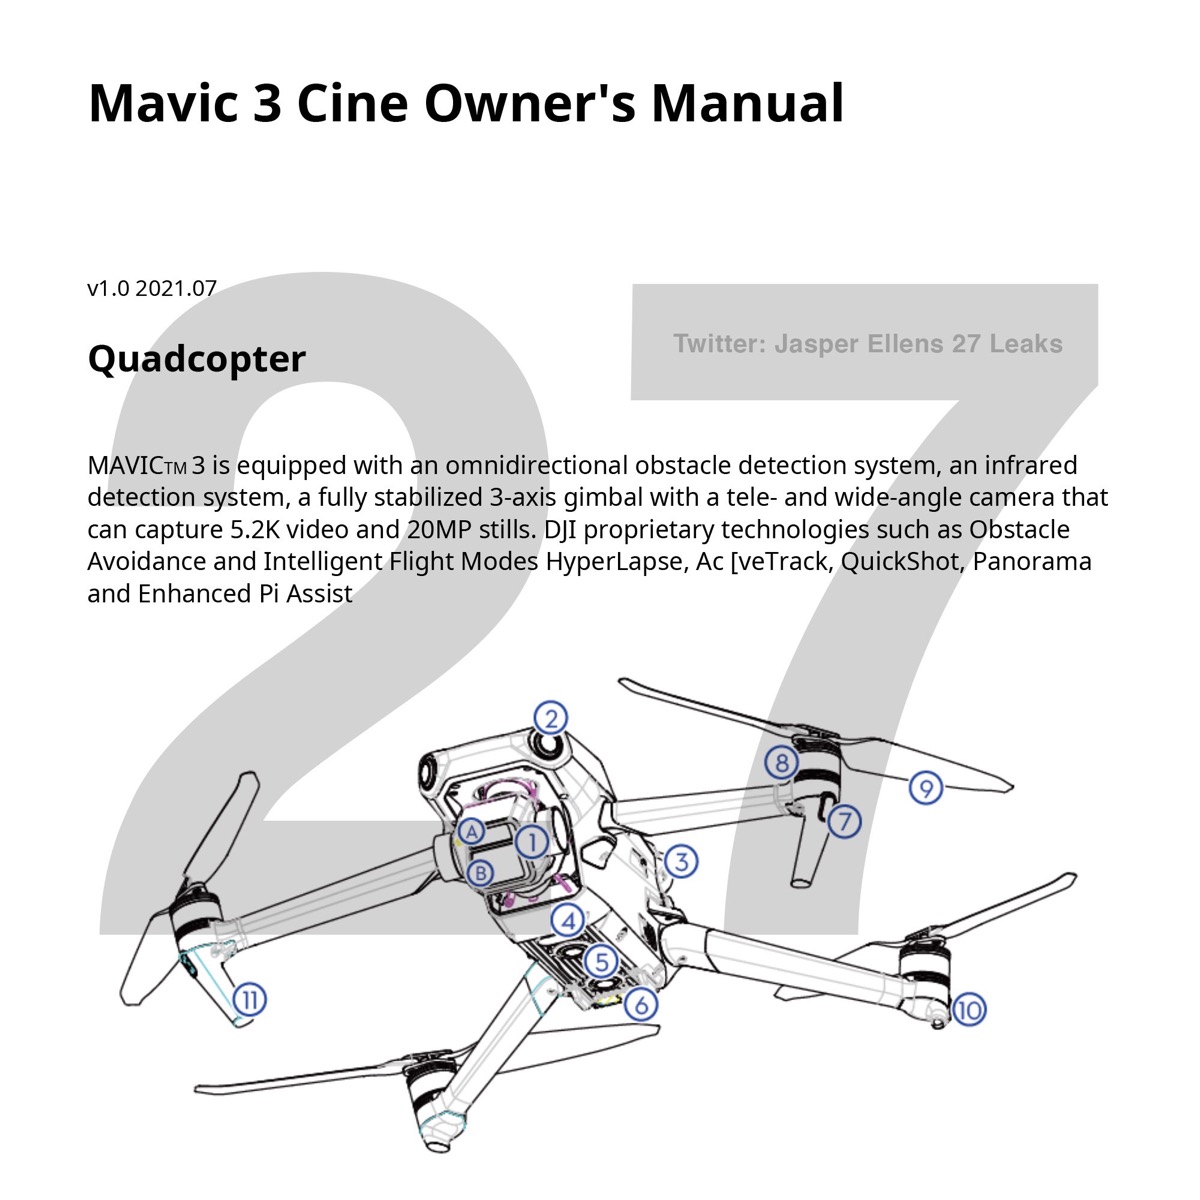 DJI Mavic 3 potrebbe arrivare con camera migliorata e autonomia incredibile 46 minuti